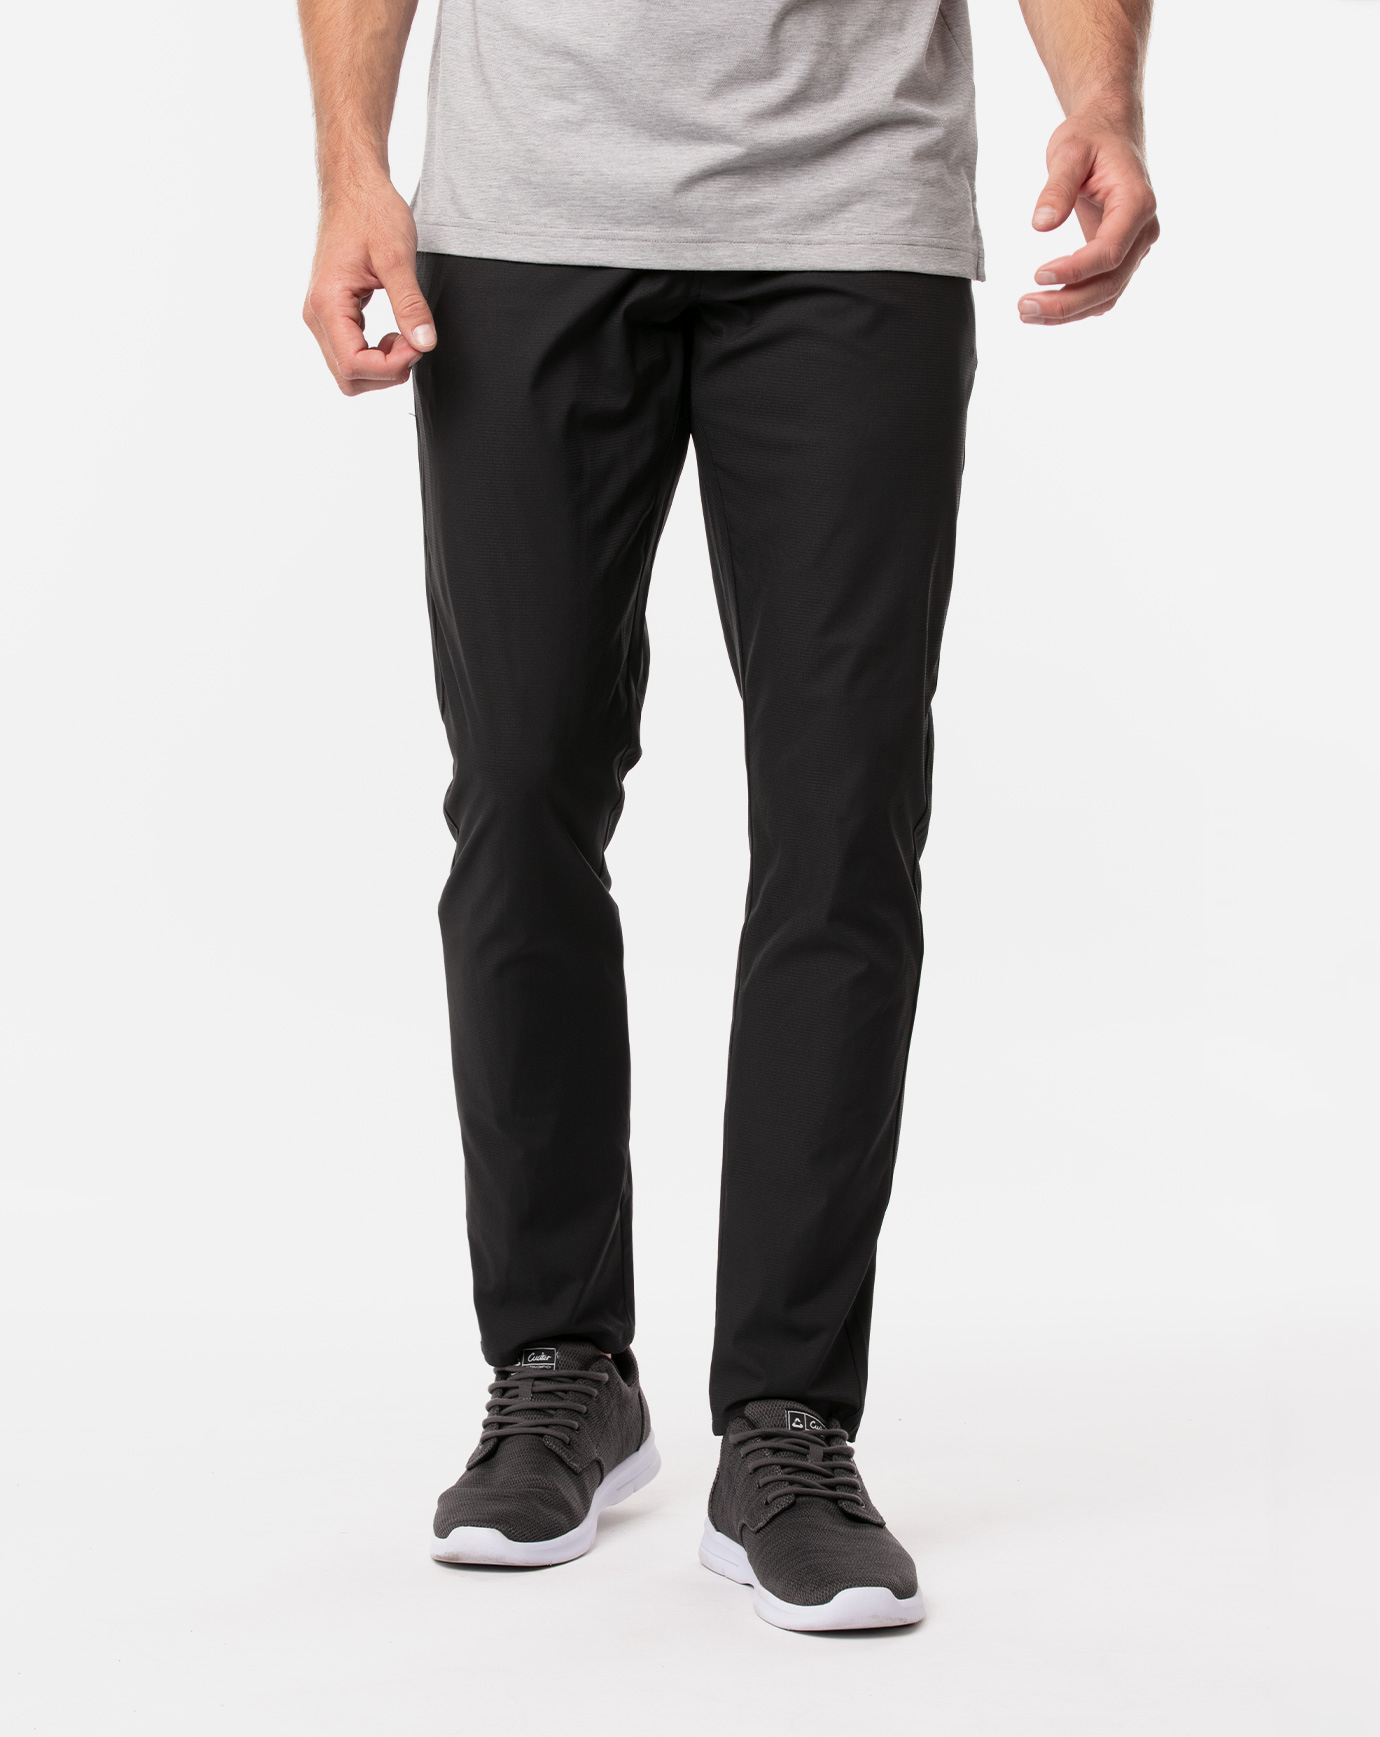 Khakis & Co., Pants & Jumpsuits